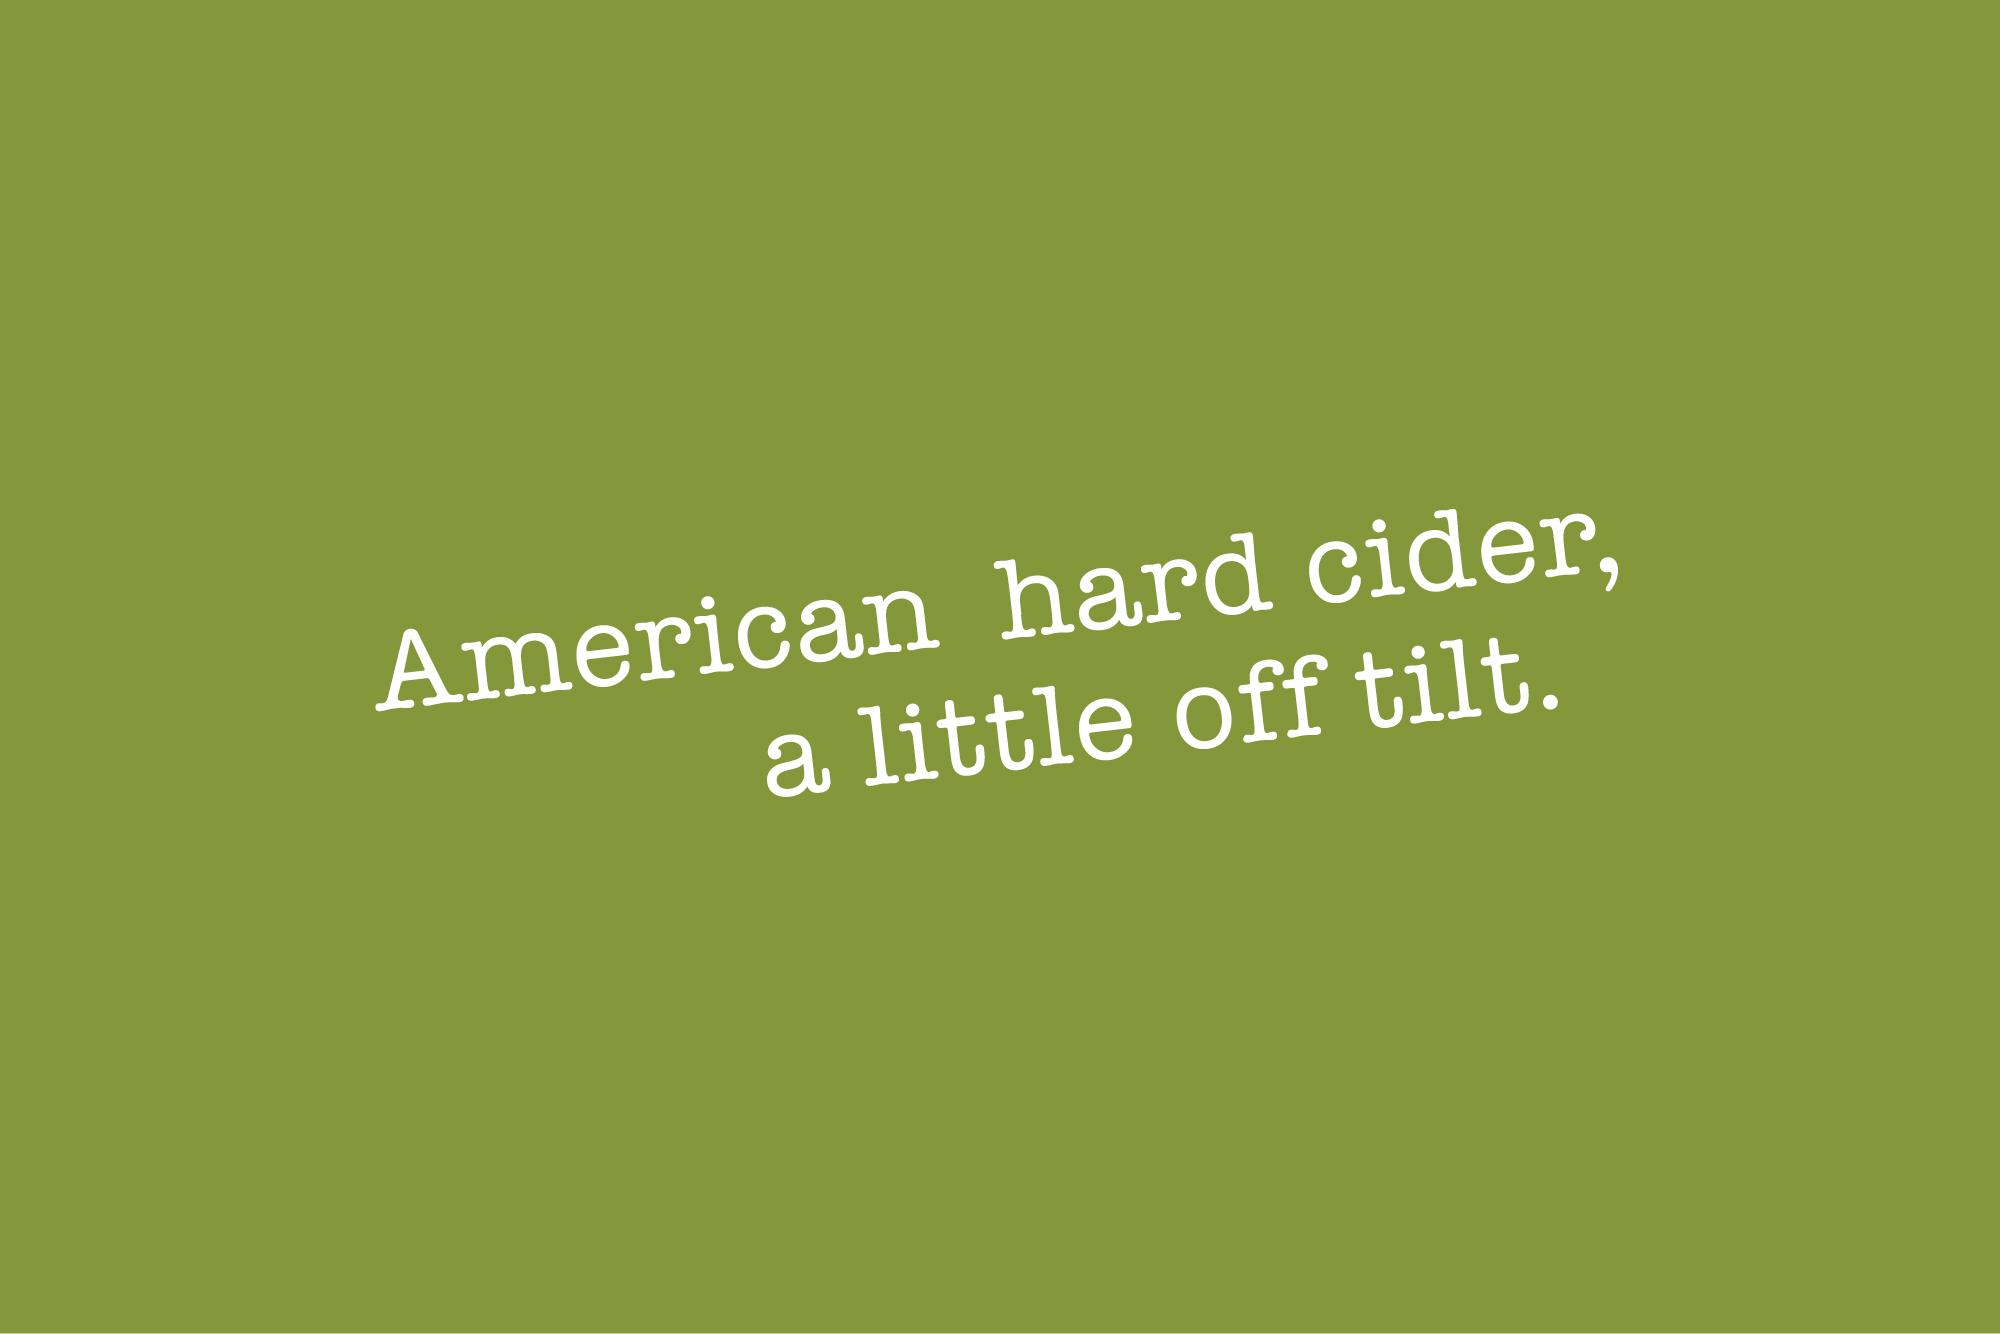 Tagline: American hard cider, a little off tilt.